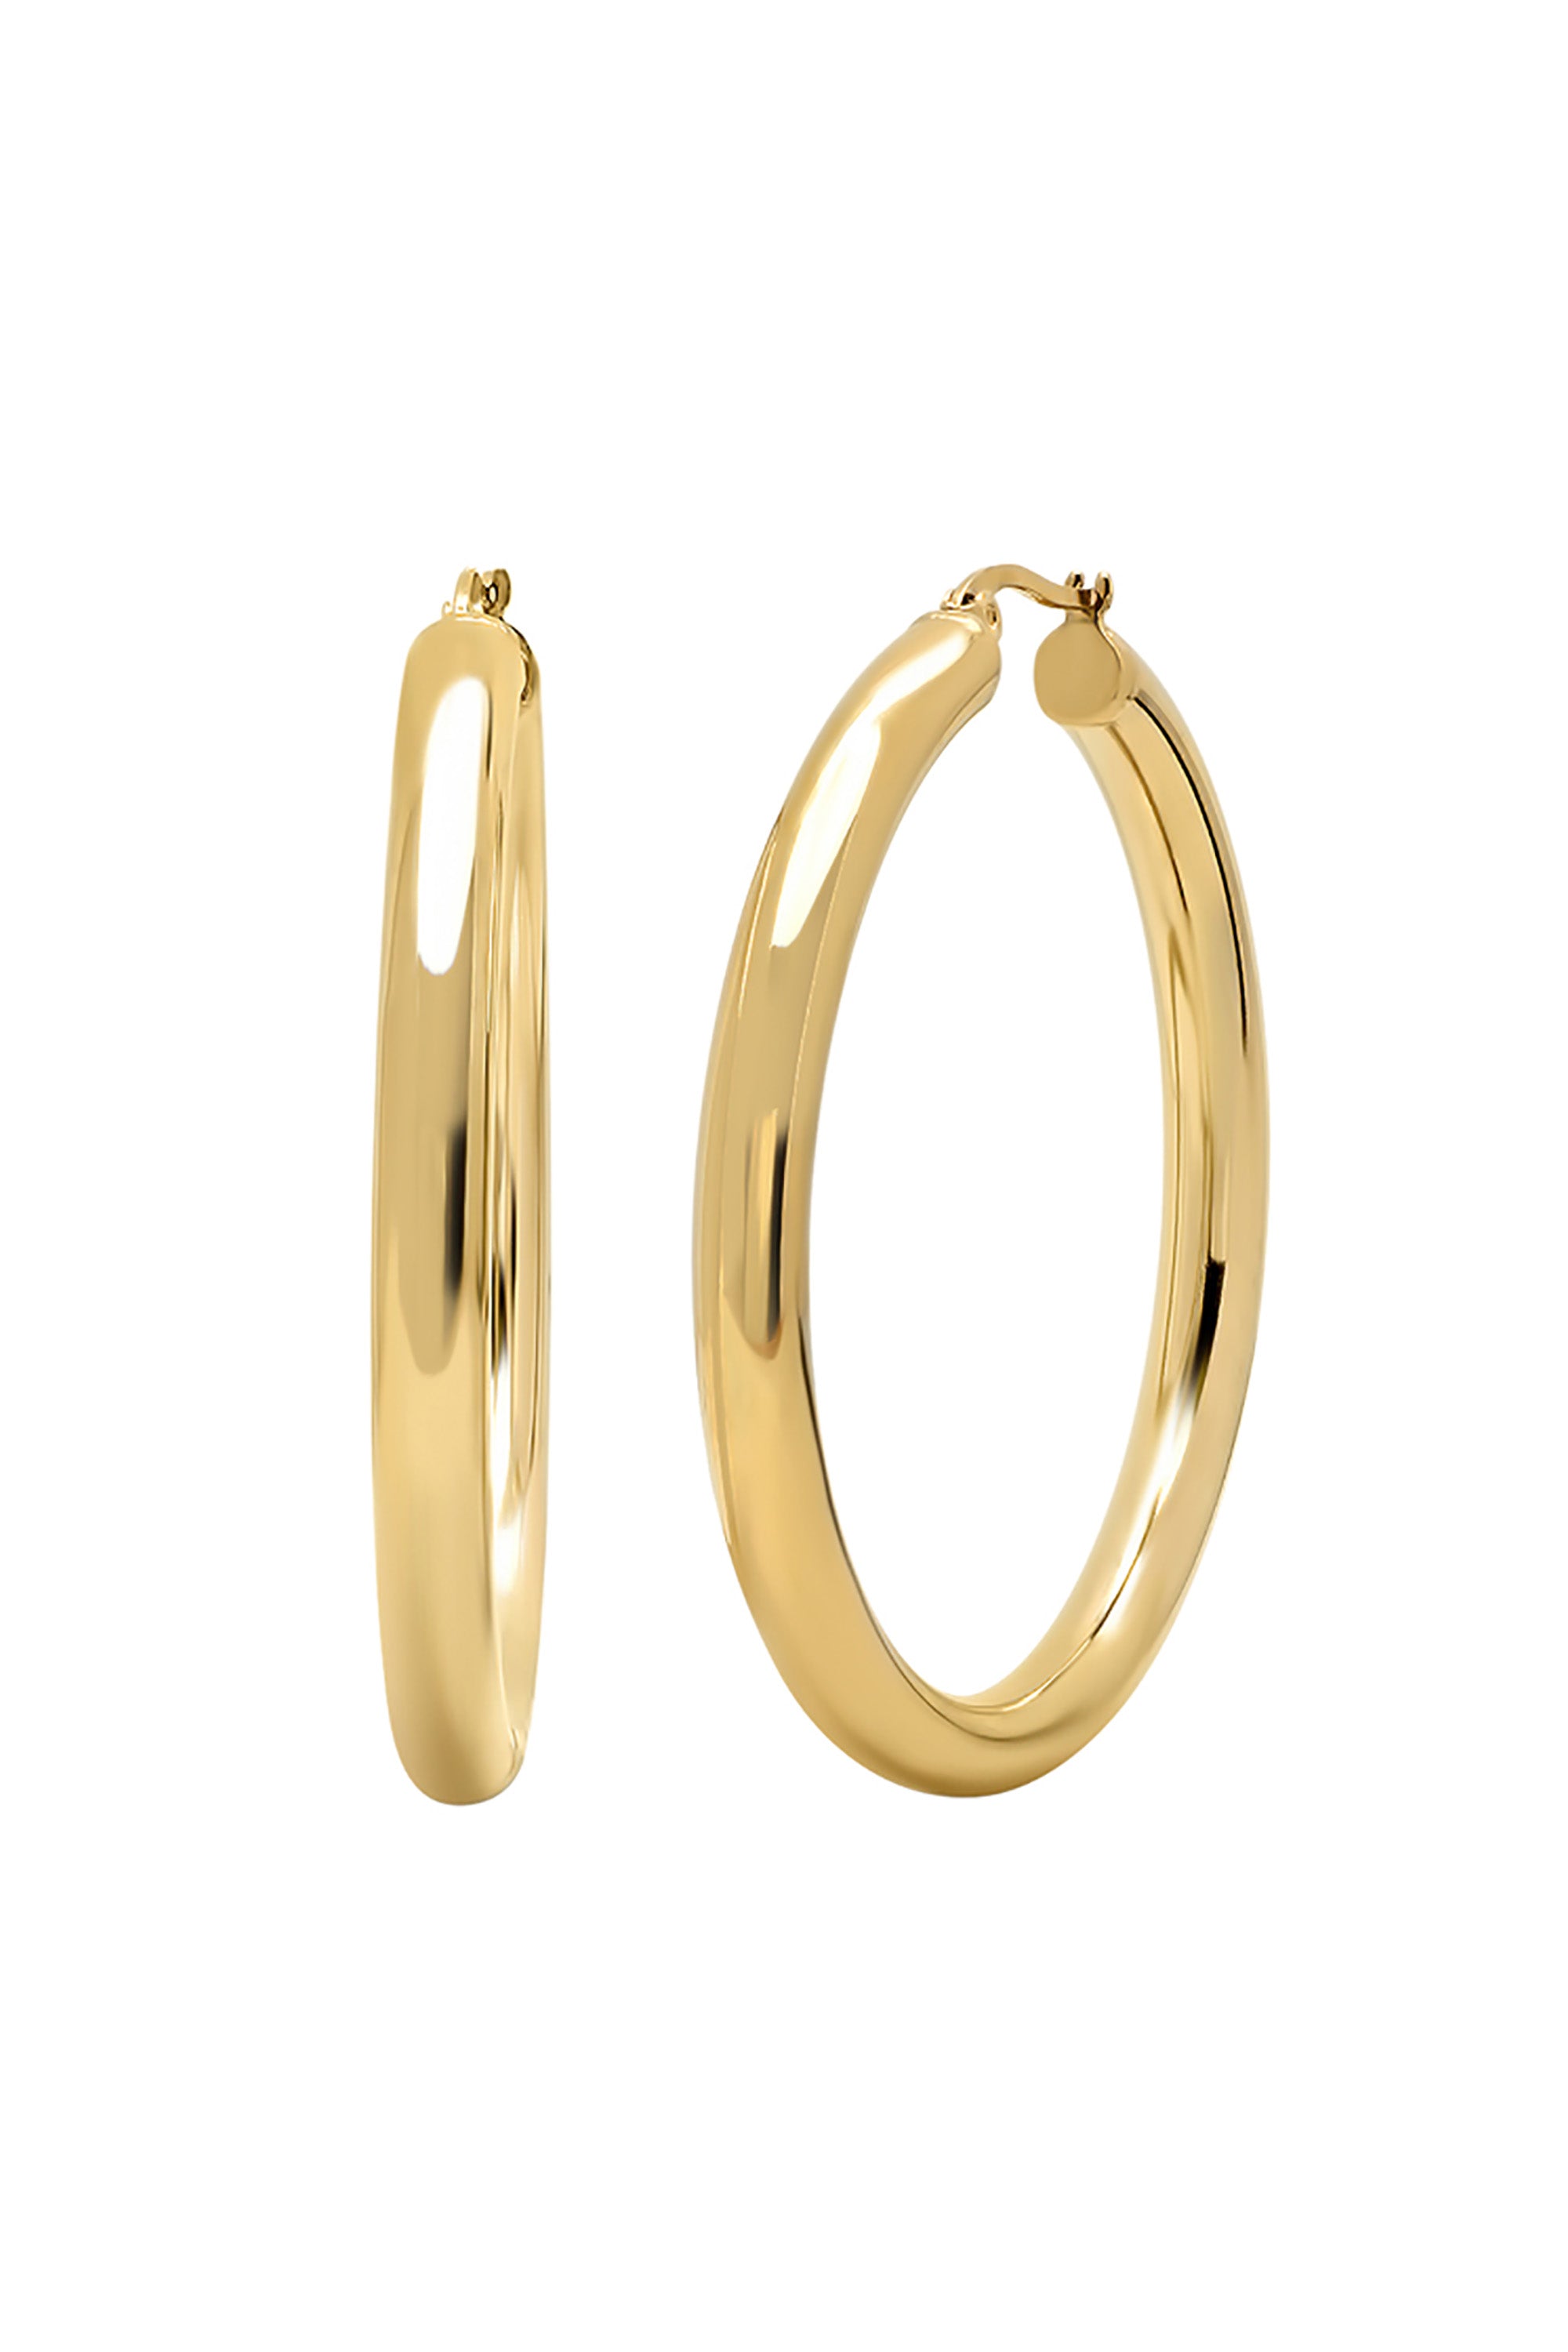 L Letter Earrings V Letter Stud Earrings for Women Gold Hoops L